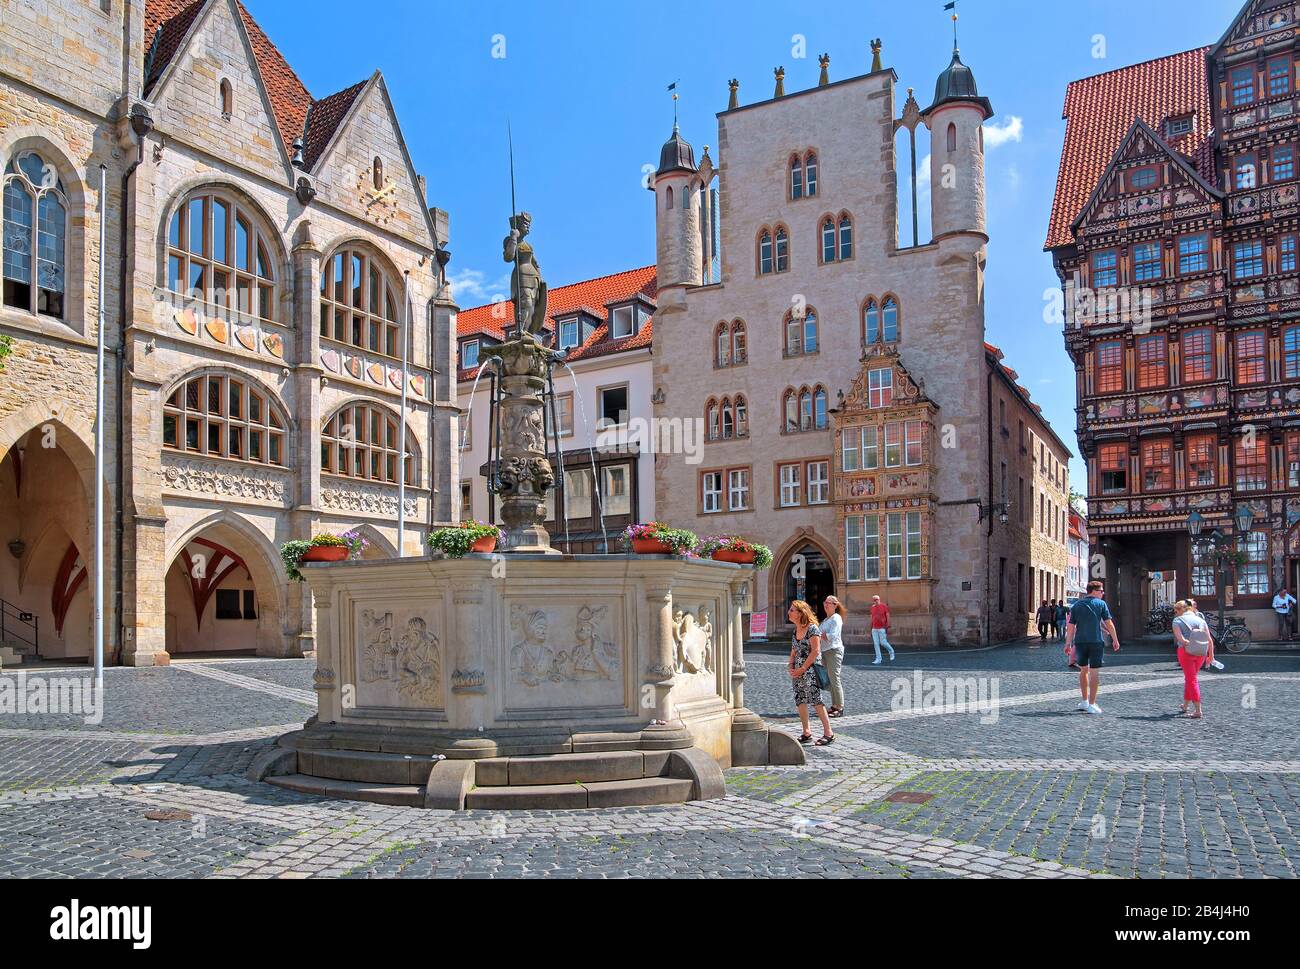 Marktplatz mit Rathaus, Roland-Brunnen, Tempelhaus und Wedekindhaus, Hildesheim, Niedersachsen, Deutschland Stockfoto